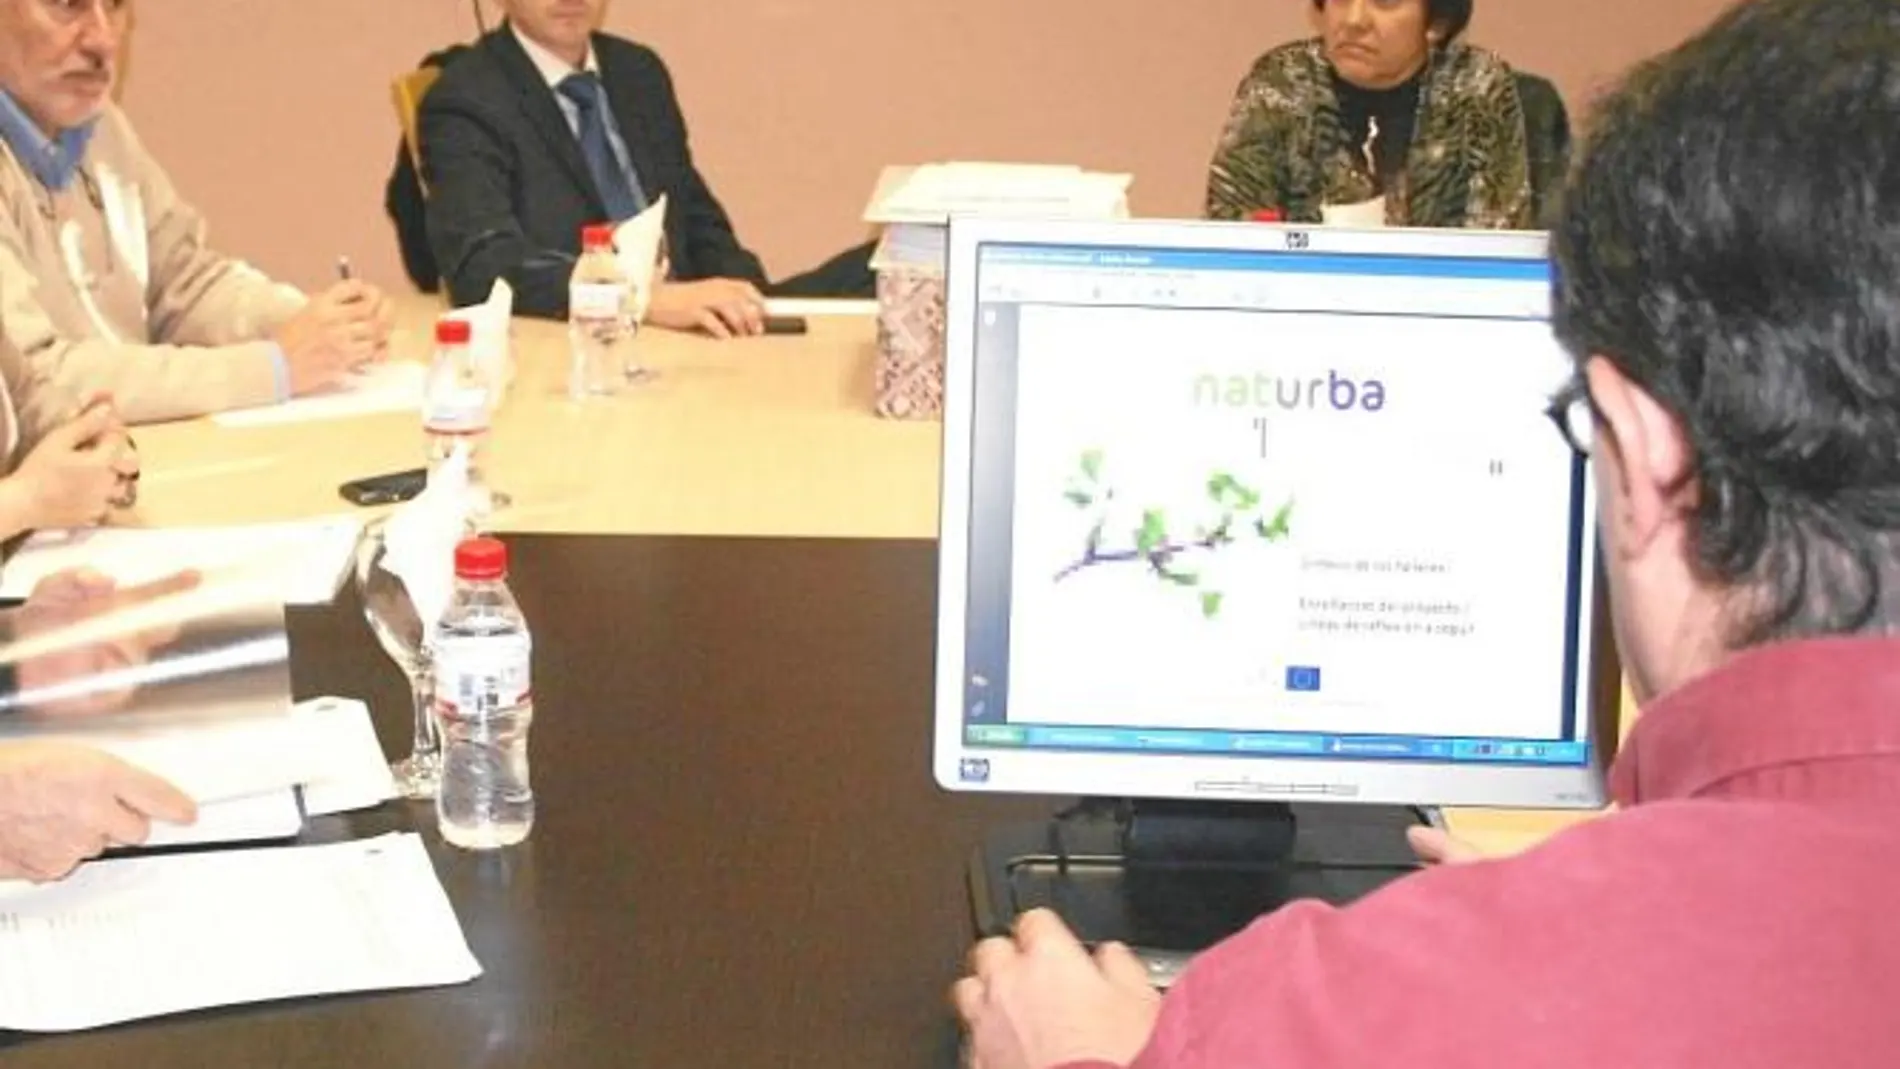 Los responsables del proyecto Naturba, en la reunión